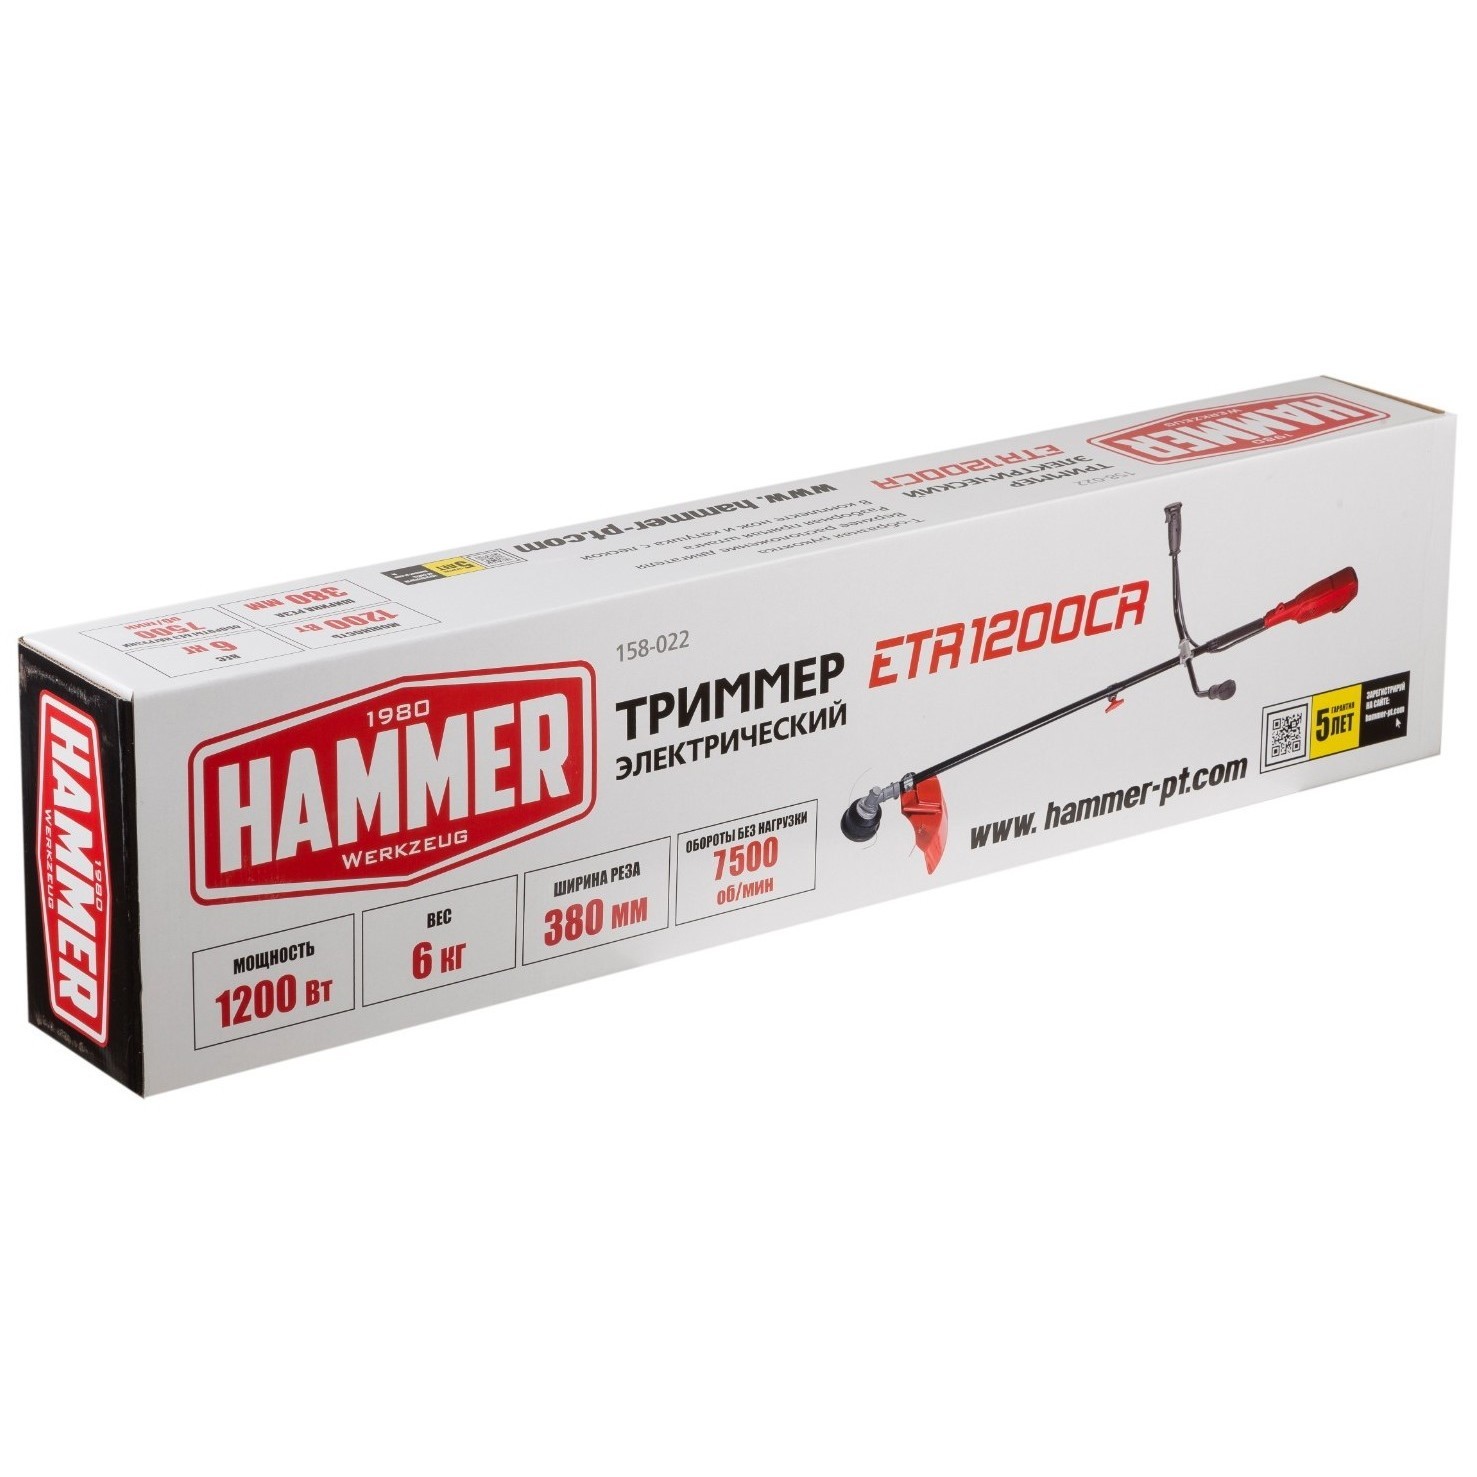 Hammer Flex ETR1200CR  + отзывы и характеристики